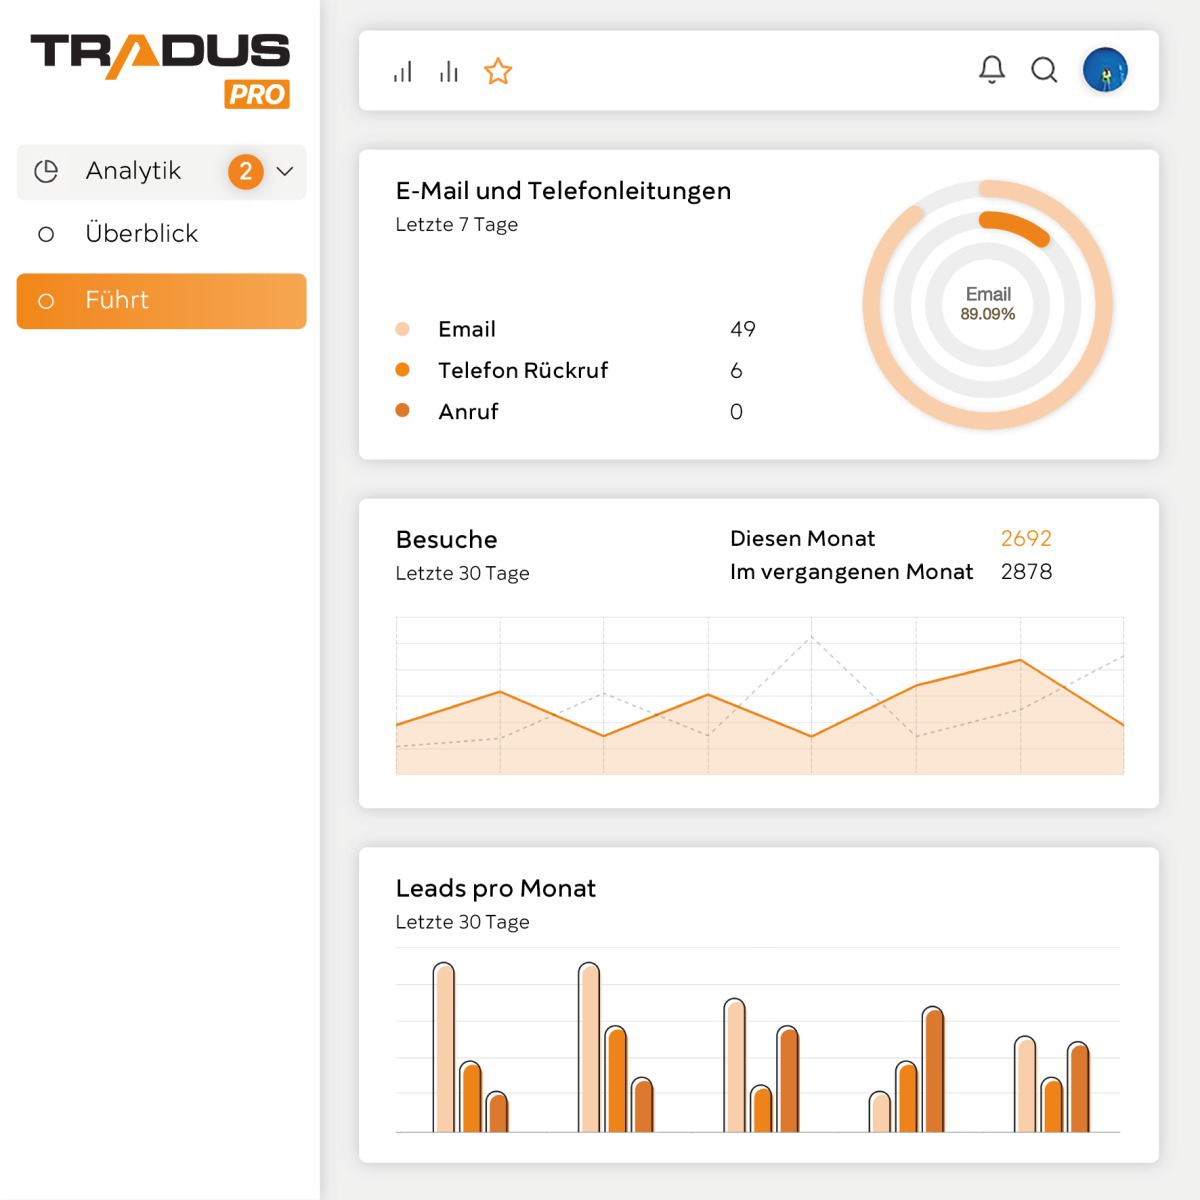 Tradus ist ein globaler Online-Marktplatz für gebrauchte Nutzfahrzeuge und schwere Maschinen.